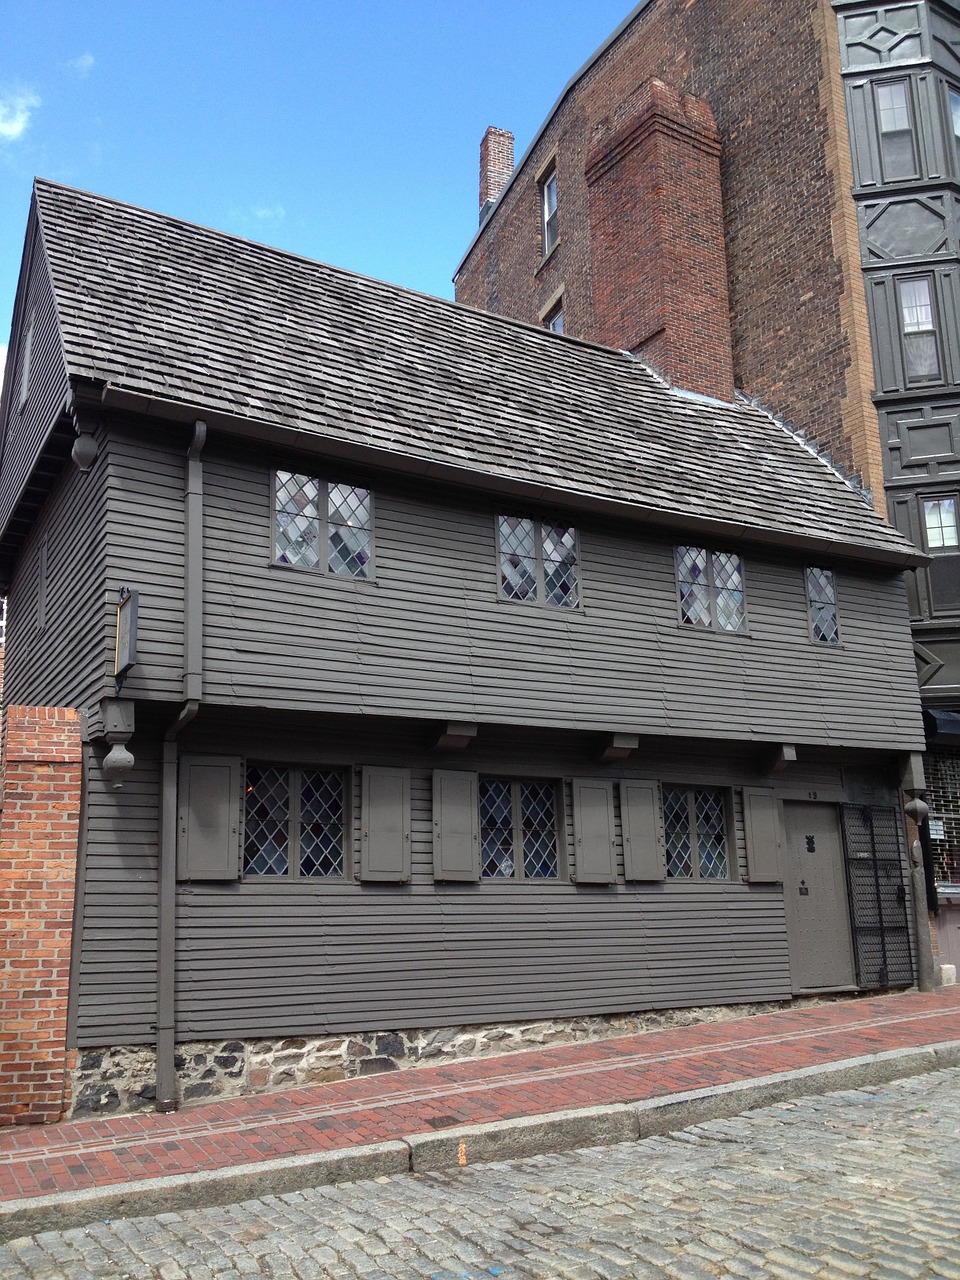 Paul Revere's Colonial House in Boston, Massachusetts